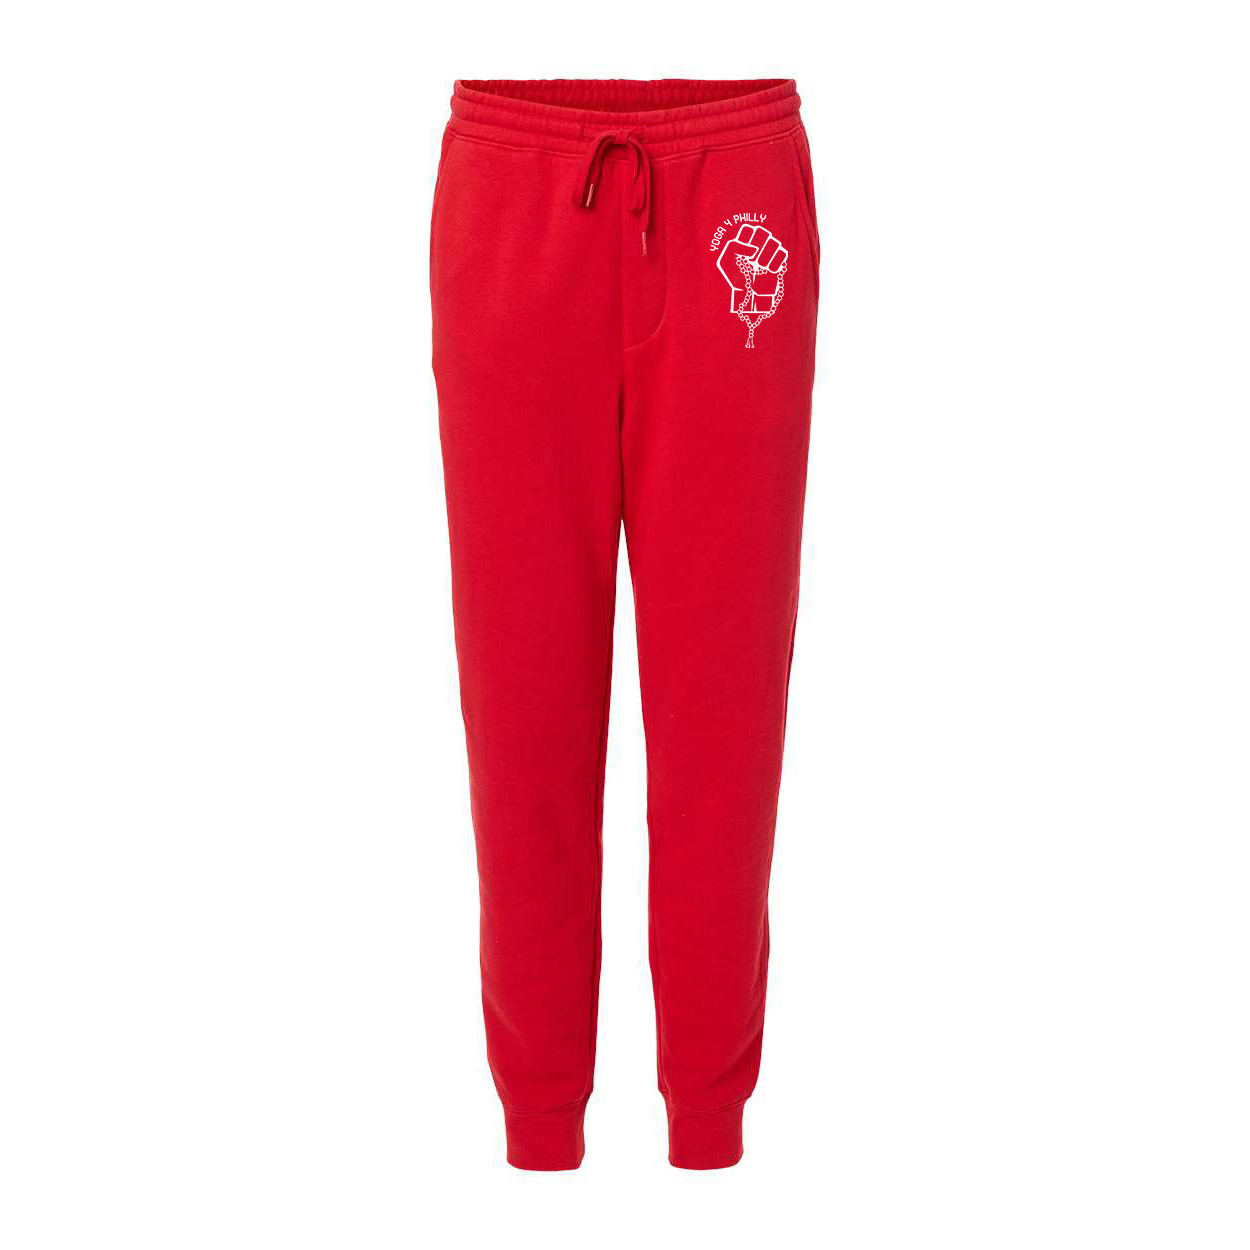 Yoga4Philly Red Fleece Pants